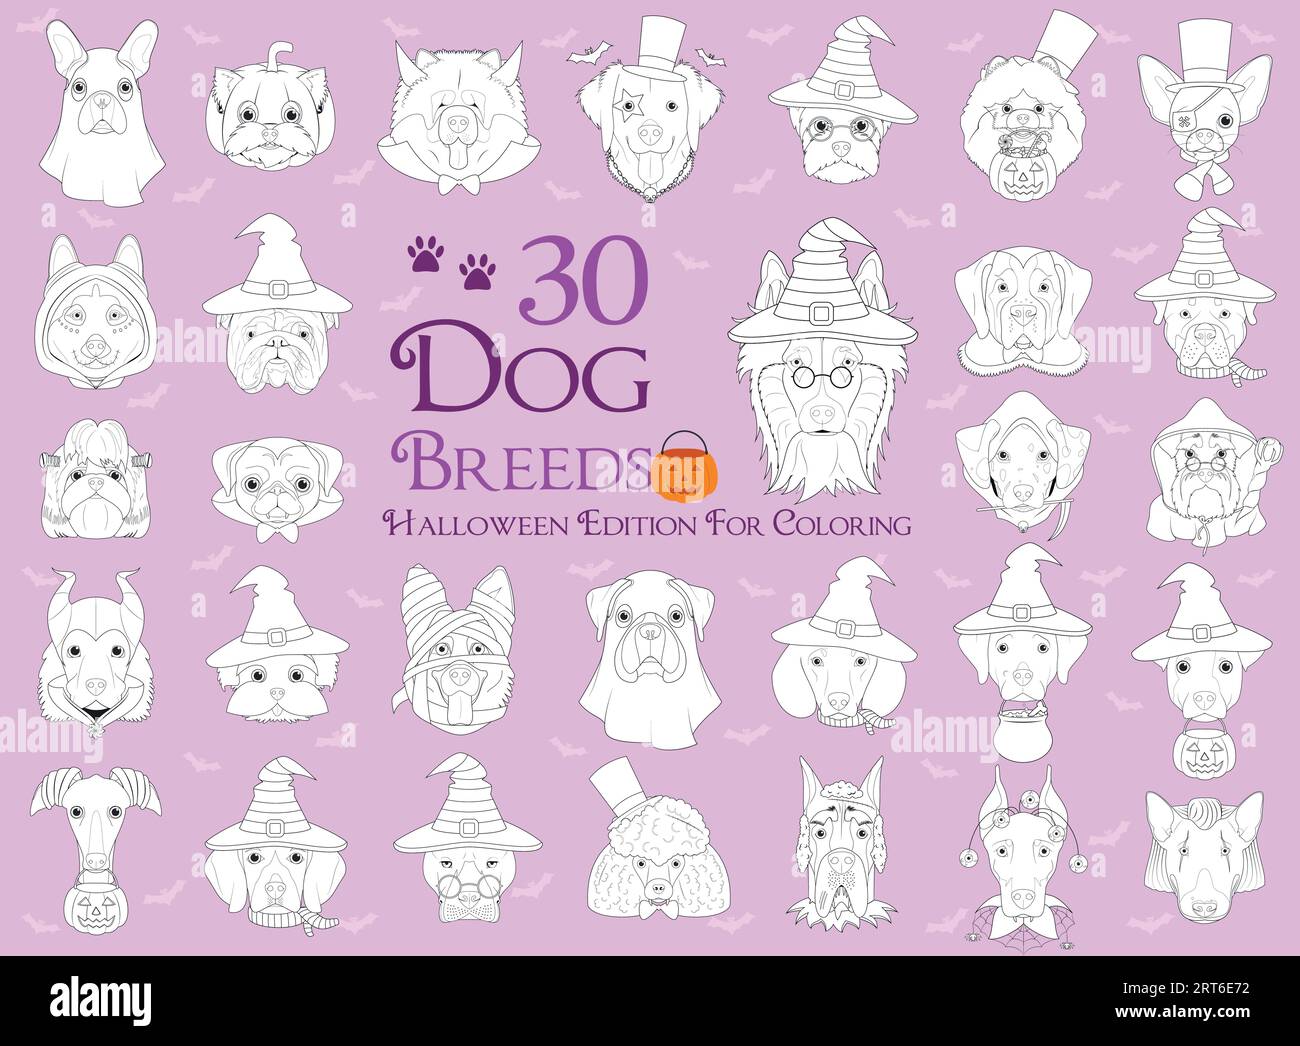 Ensemble de 30 races de chiens avec des costumes d'Halloween pour la coloration Illustration de Vecteur